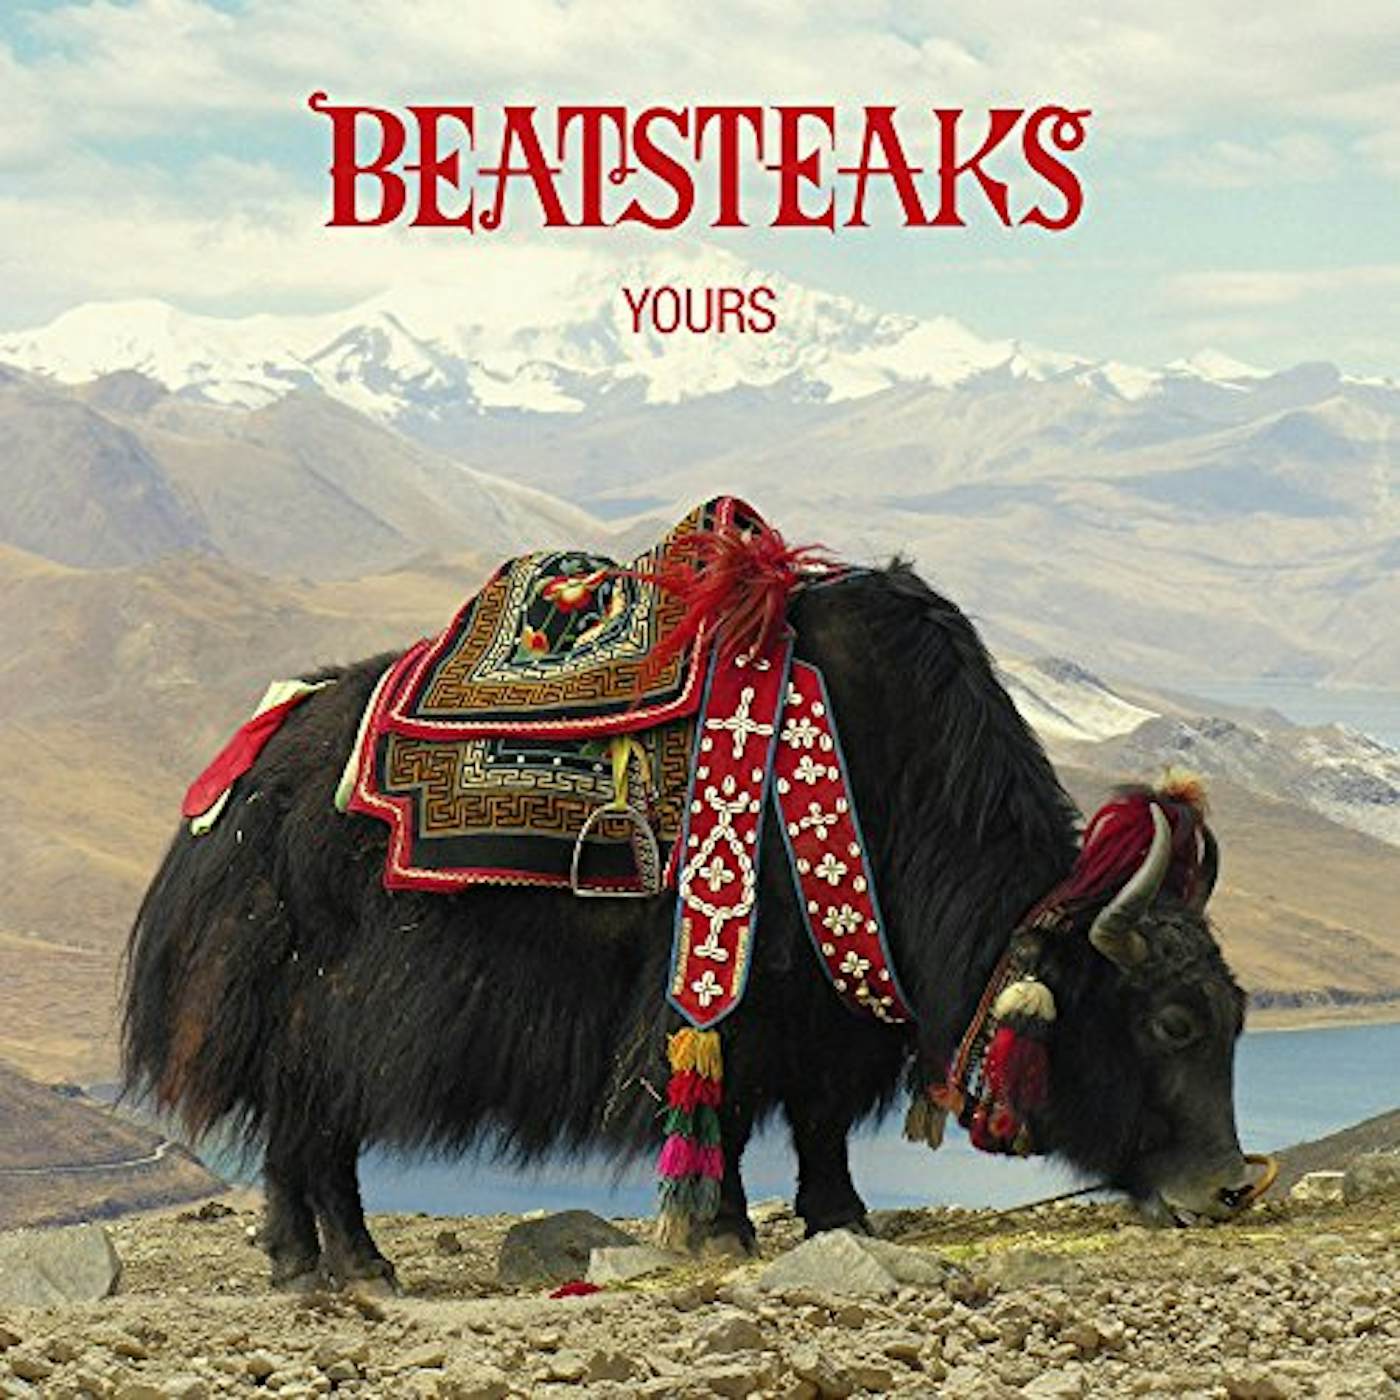 Beatsteaks YOURS: DELUXE EDITION Vinyl Record